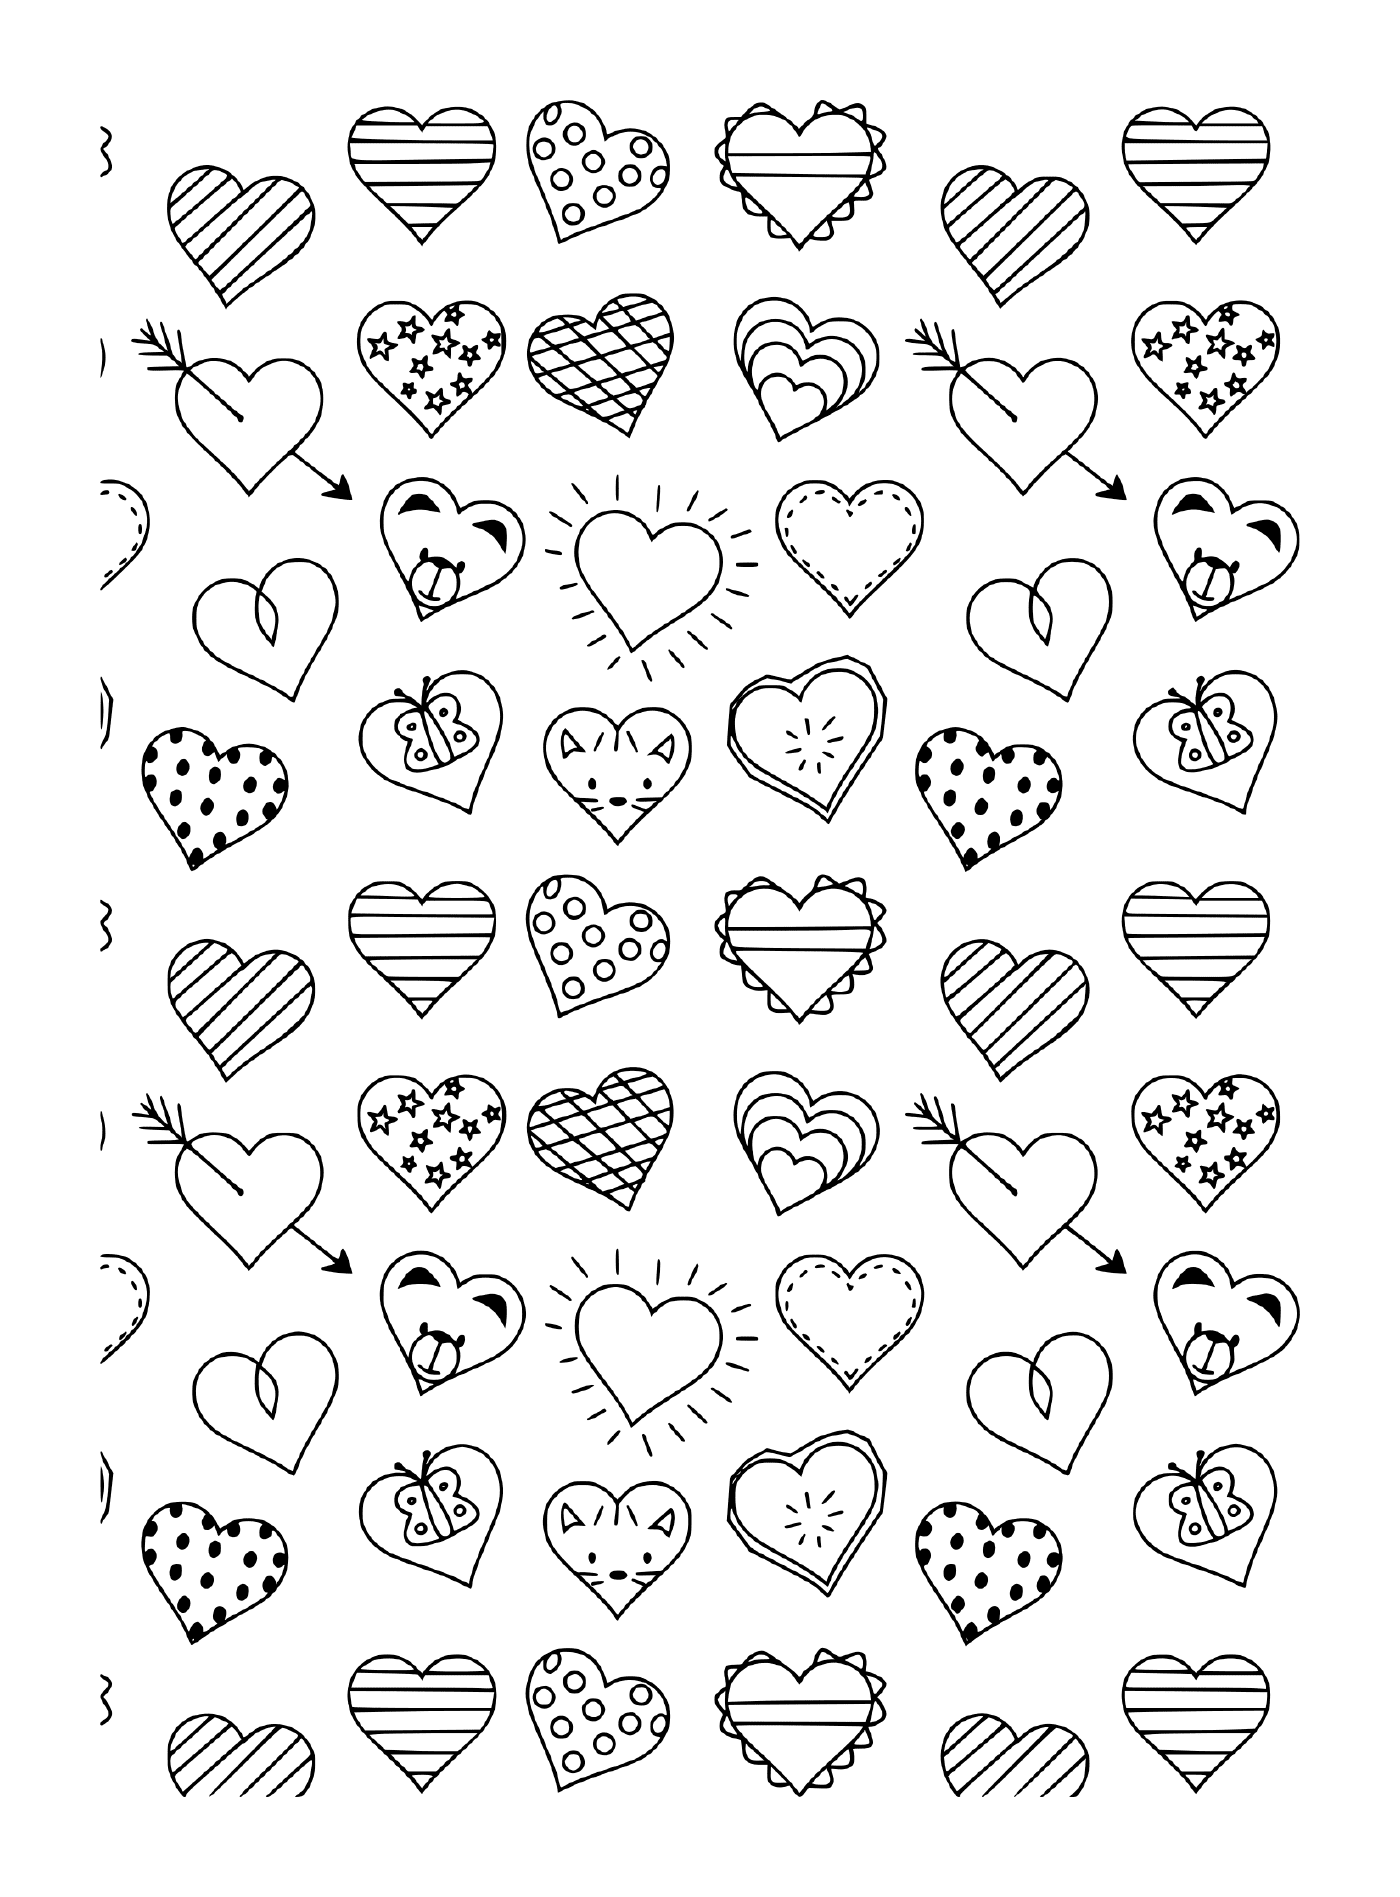  Ein schwarz-weißes Muster aus verschiedenen Herzen und Pfeilen 